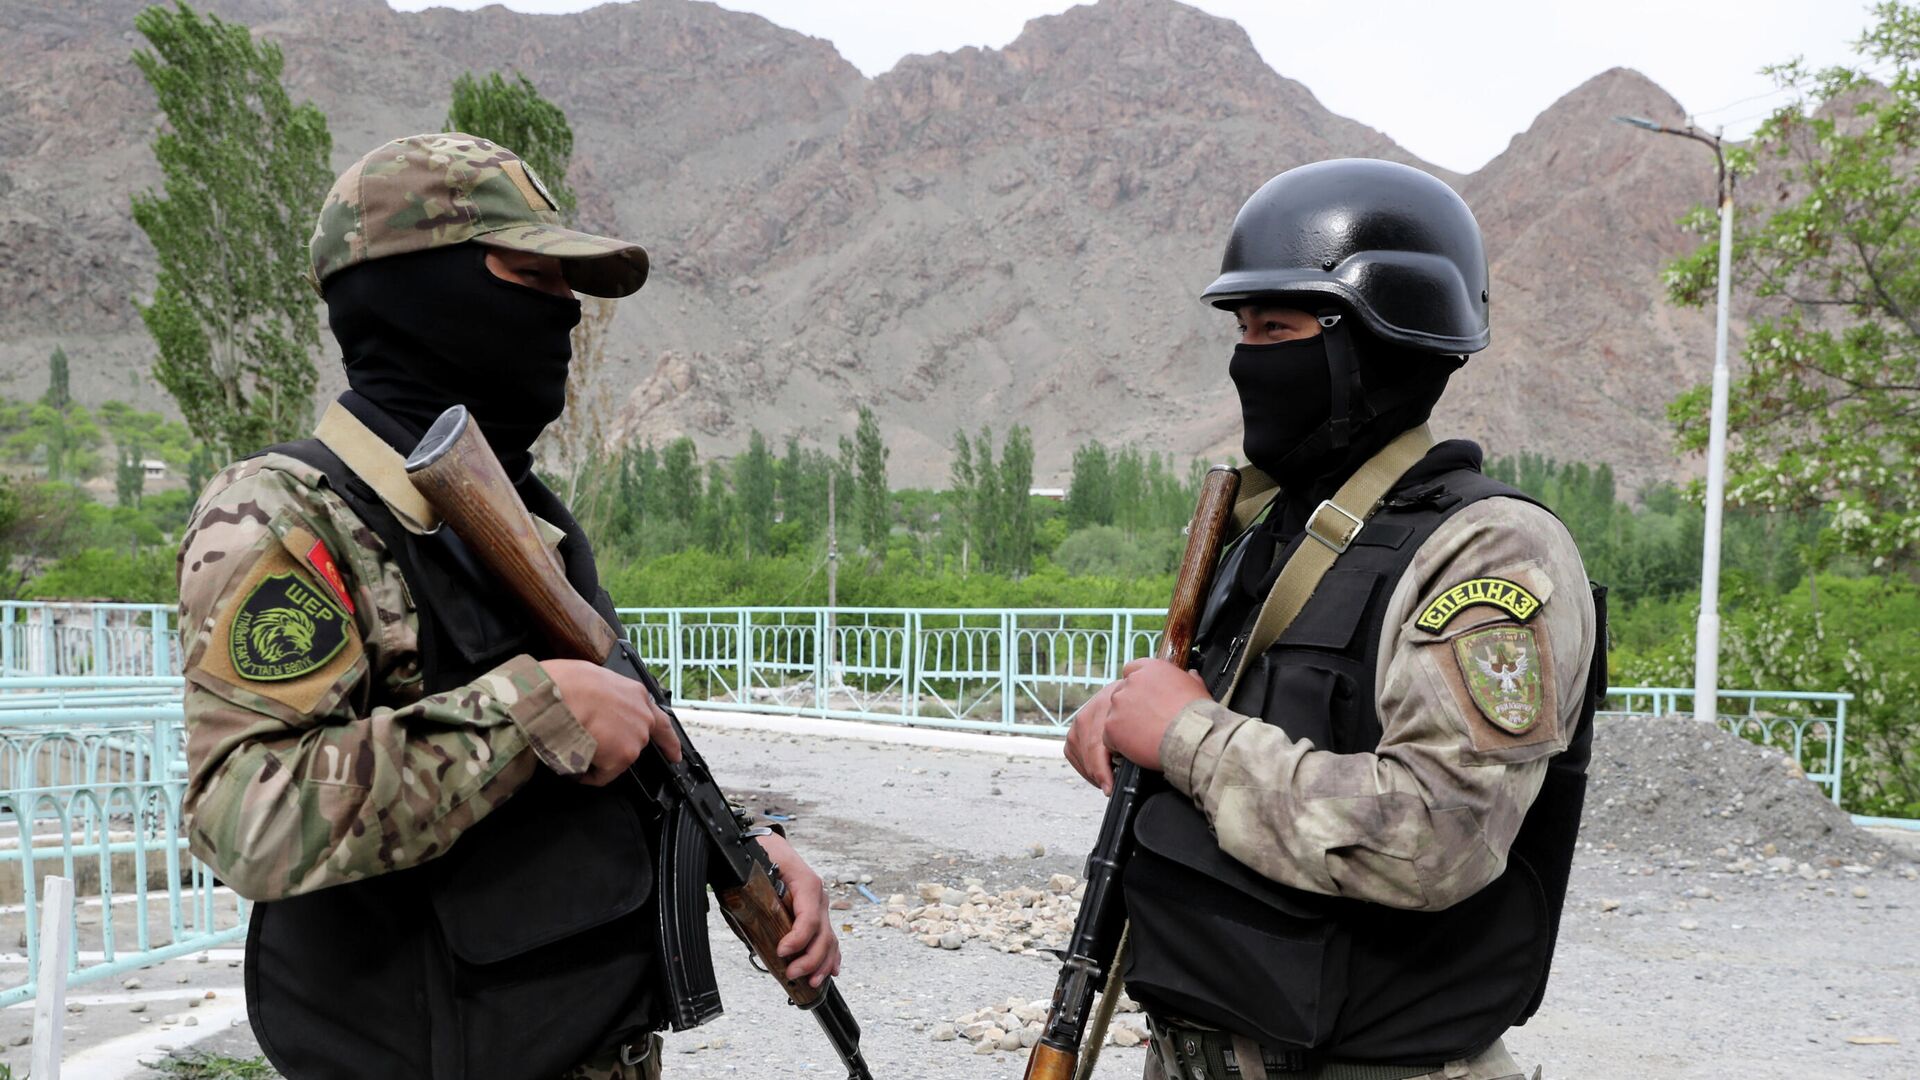 Администрация города Исфар в Таджикистан: конфликт спровоцировали киргизские пограничники